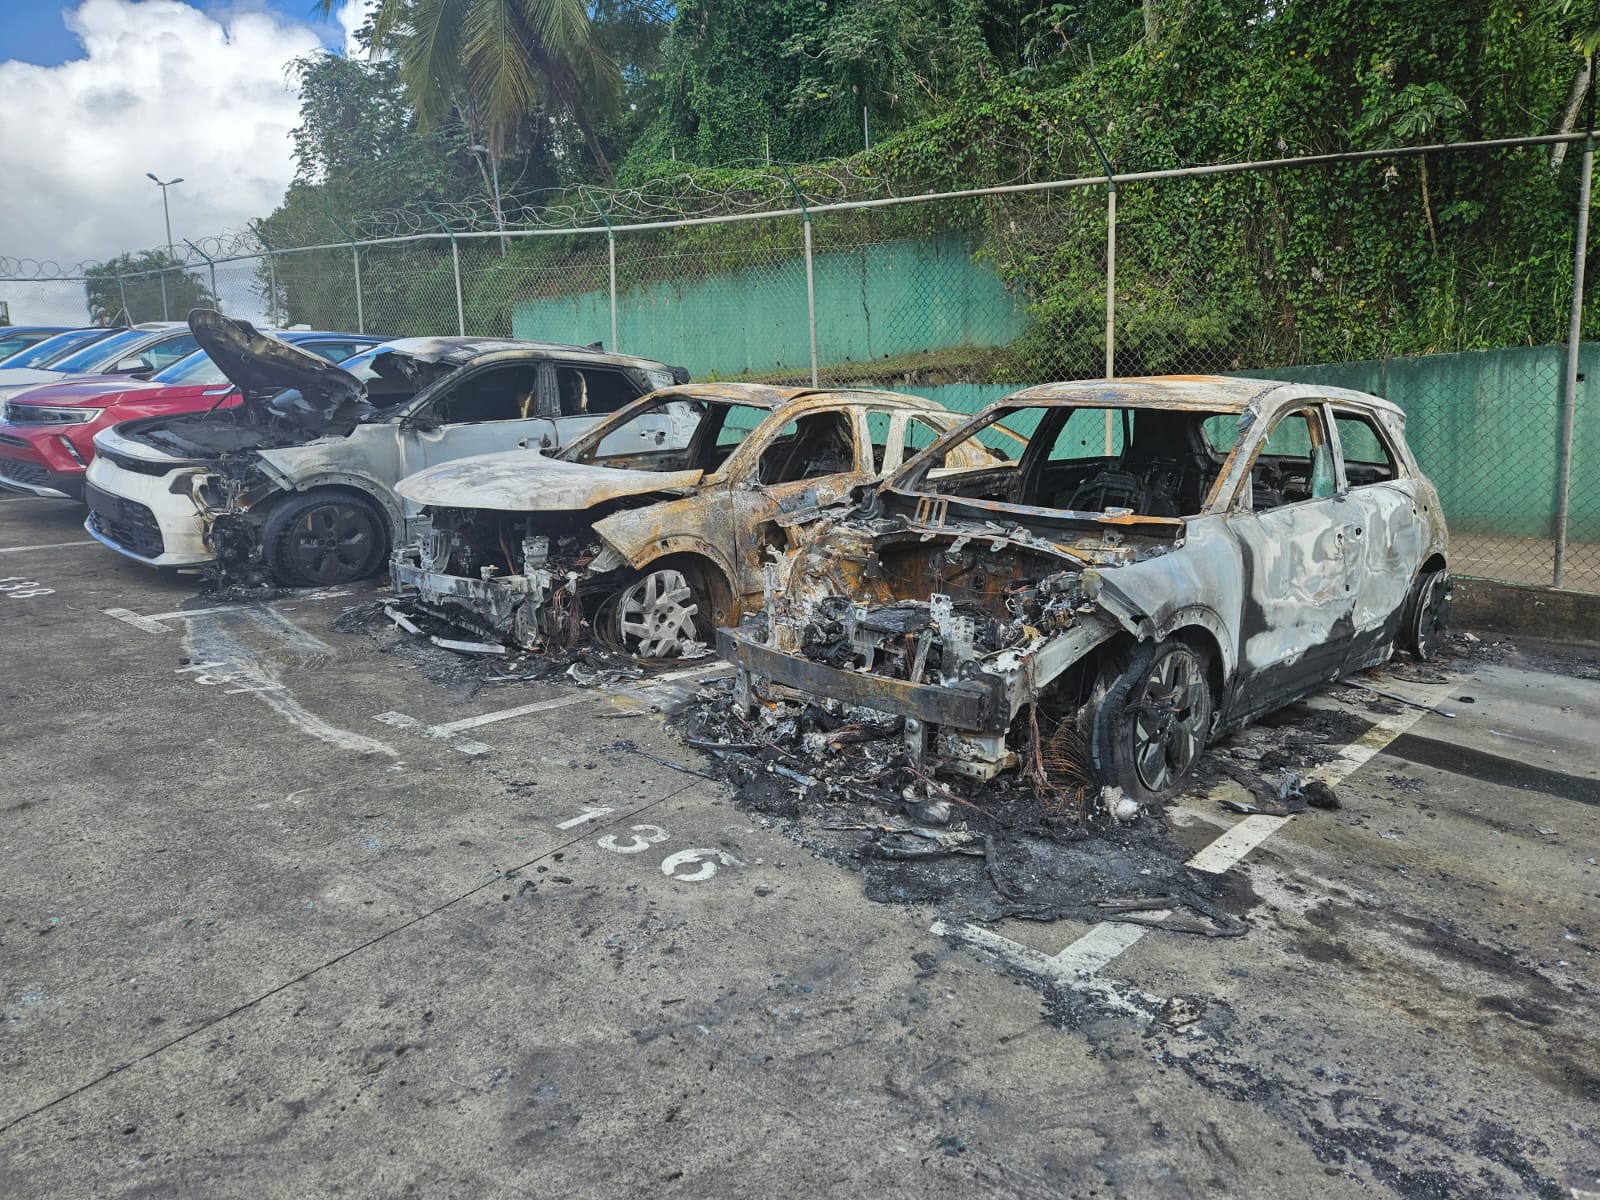     Incendies de véhicules à Autos GM : un préjudice estimé à 400 000 euros

